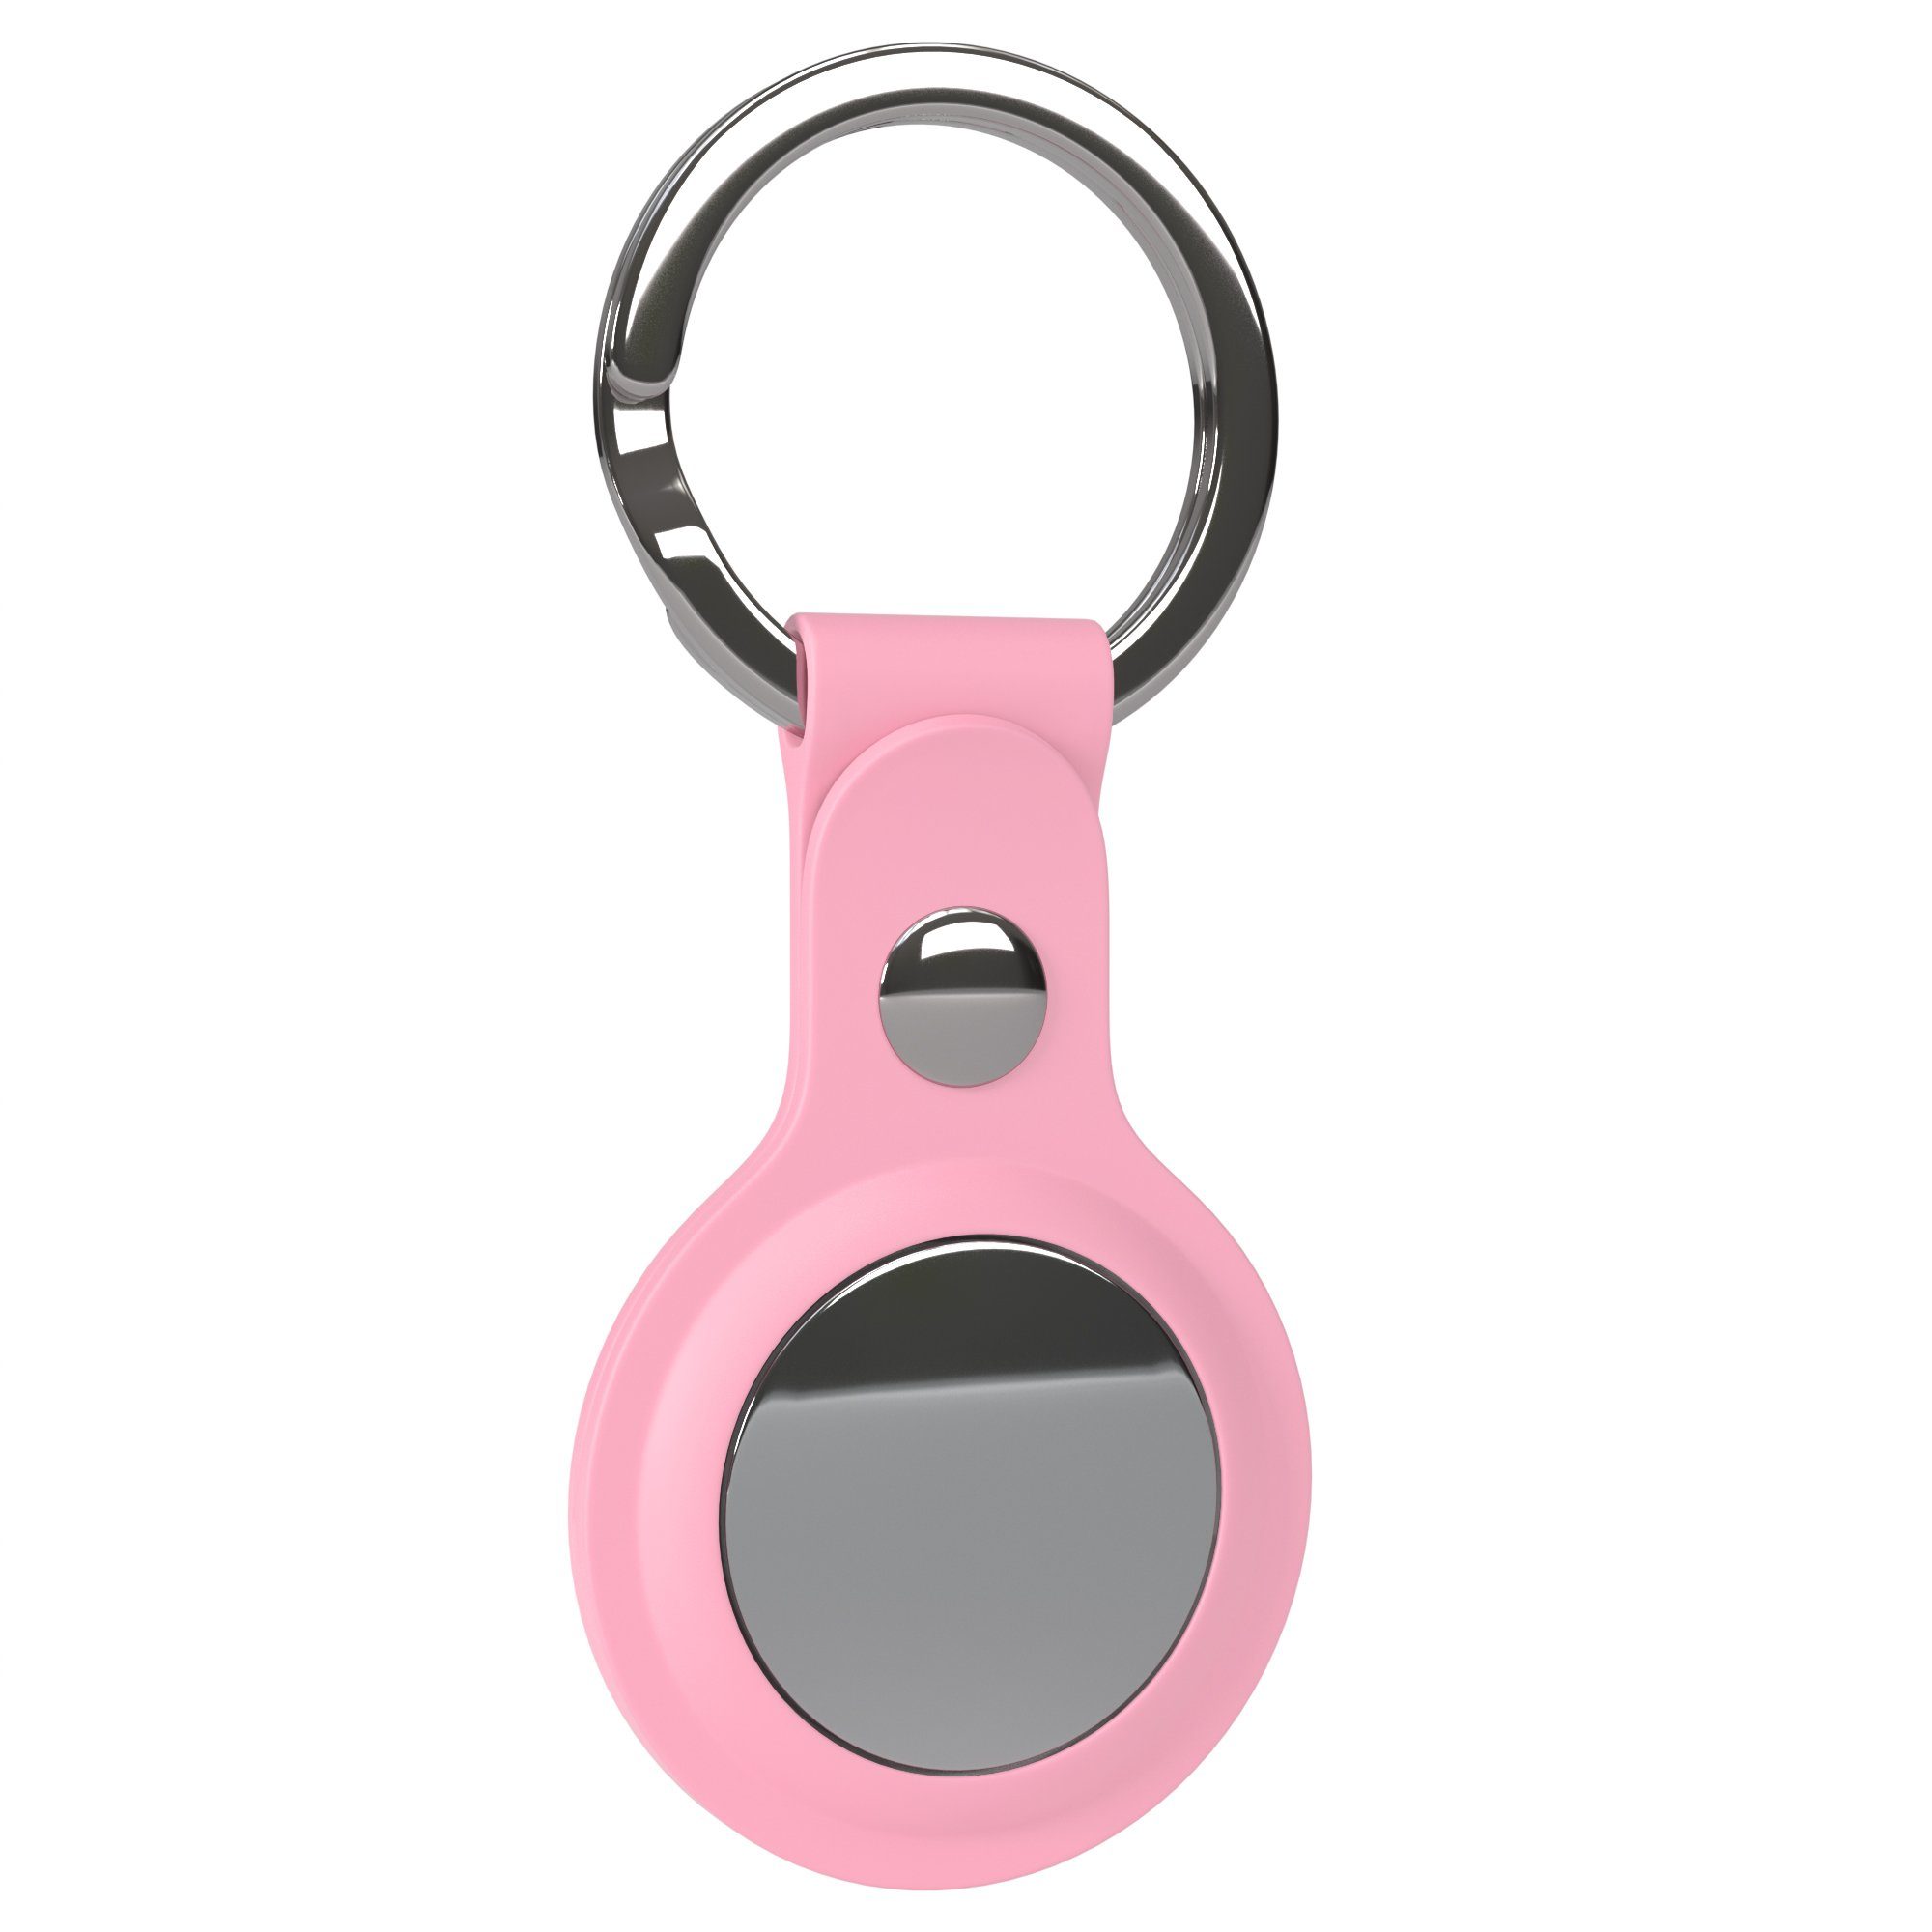 Schlüsselring Rosa Ring CASE kompatibel Kratzfeste Schlüsselanhänger Silikon AirTag, Tasche Apple Airtags aus Anhänger Hülle EAZY mit